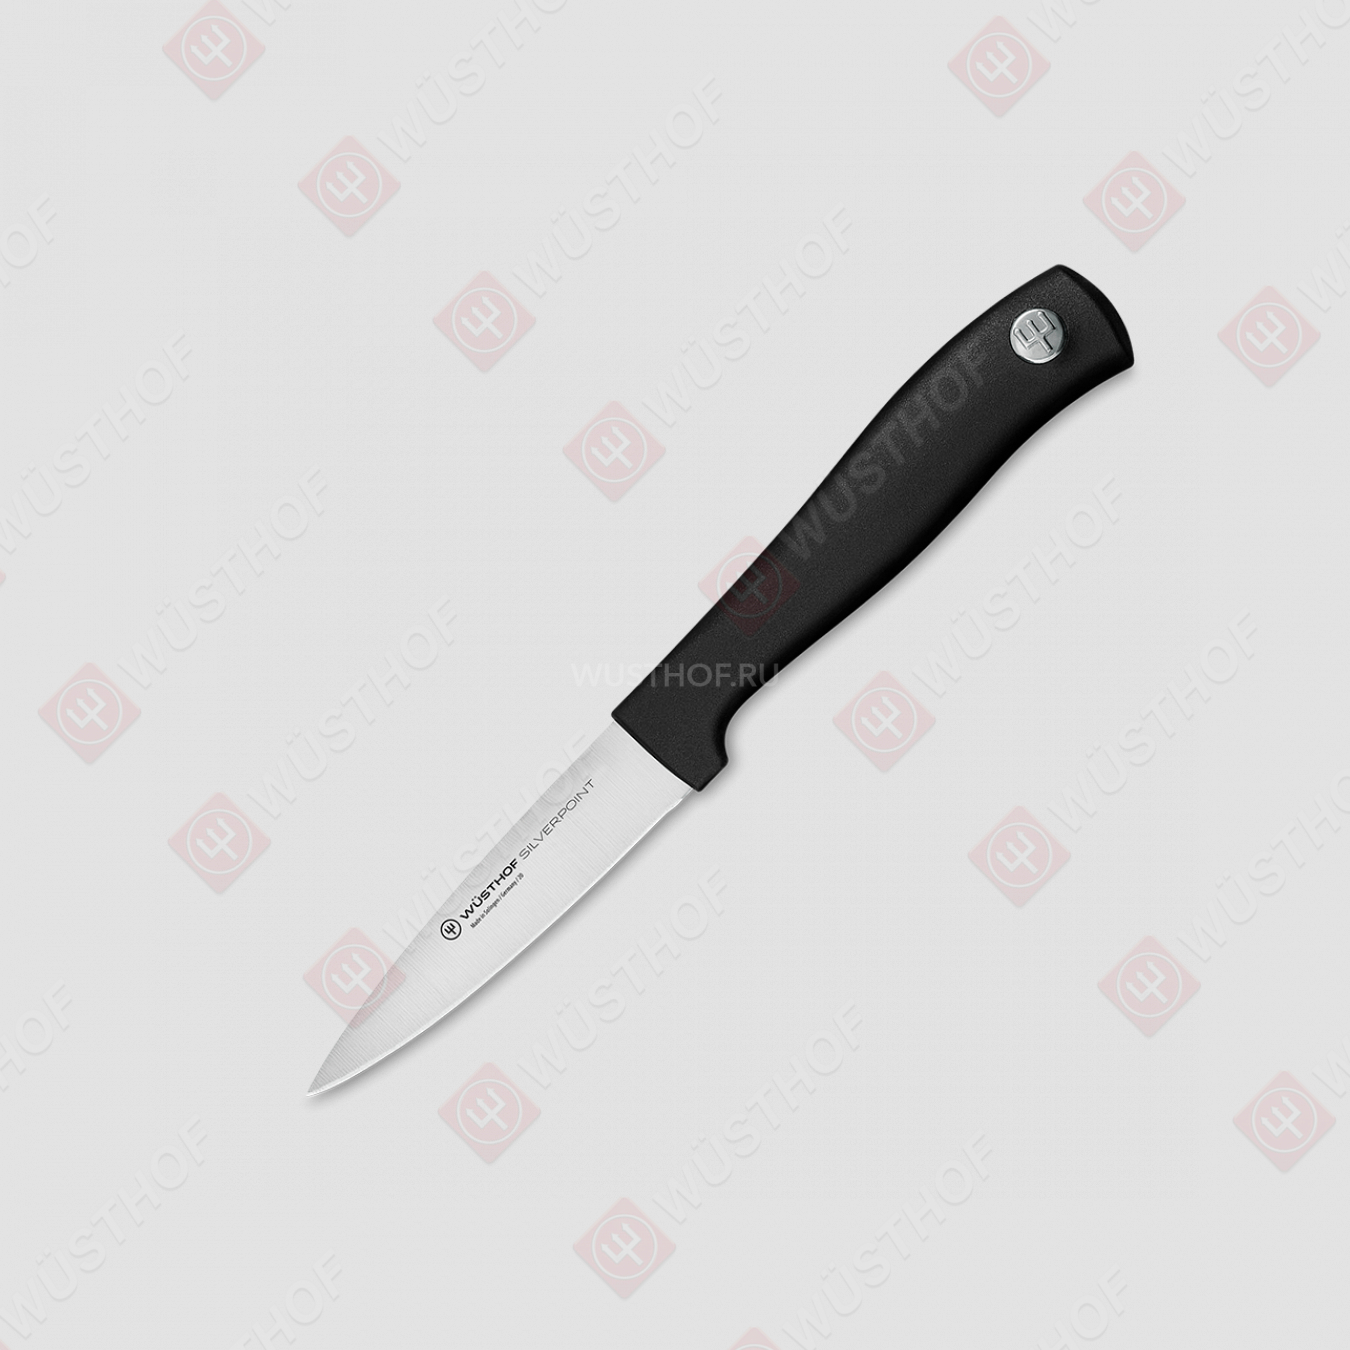 Нож кухонный для чистки и резки овощей 8 см, серия Silverpoint, WUESTHOF, Золинген, Германия